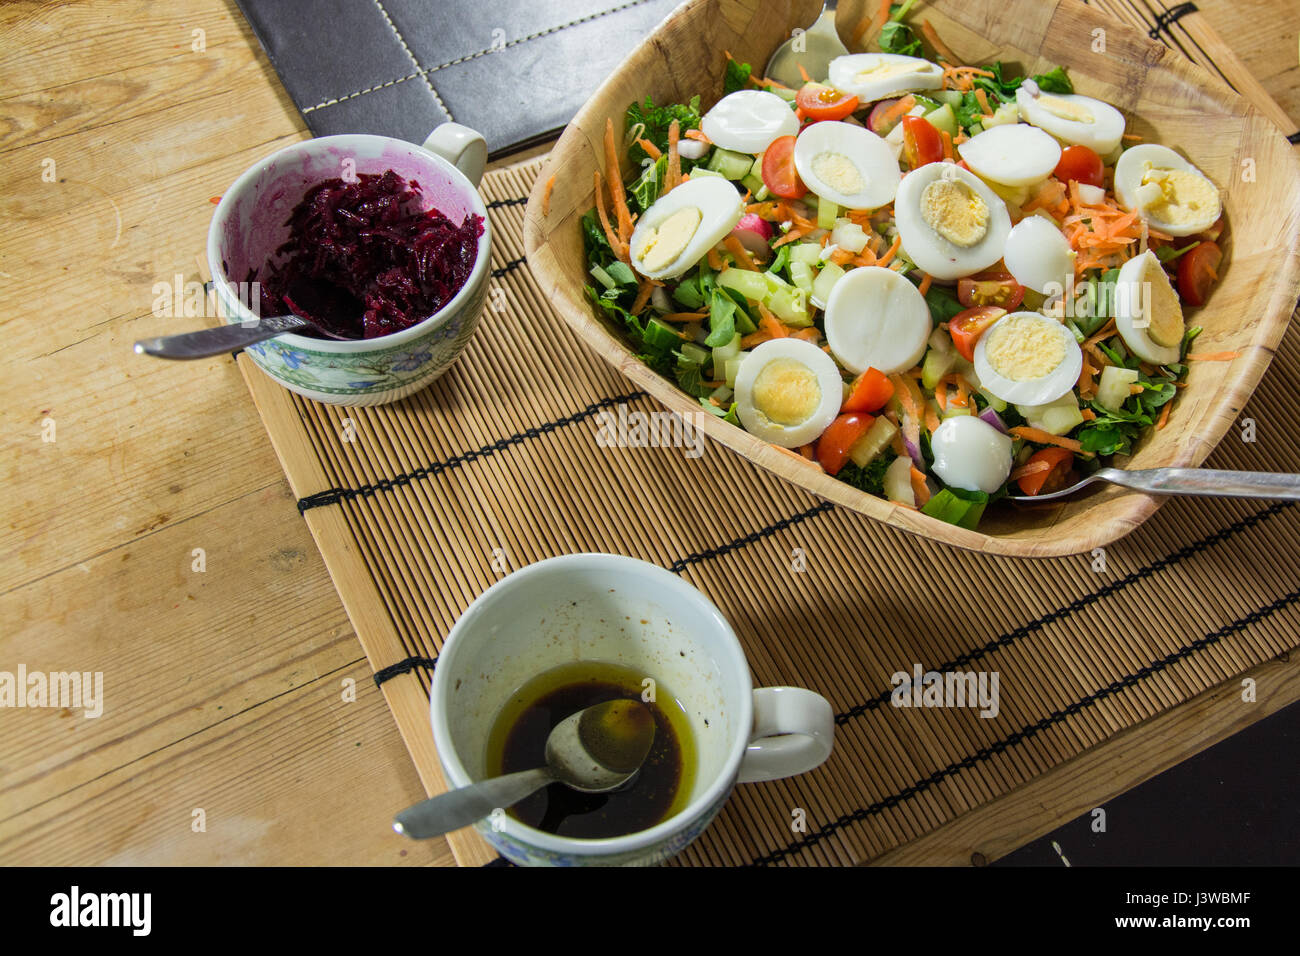 Eine Schüssel Eiersalat. Bestehend aus hart gekochtes Ei, Salat, Tomate, Karotte, Gurke und Karotte. Vegetarisches Essen. Stockfoto